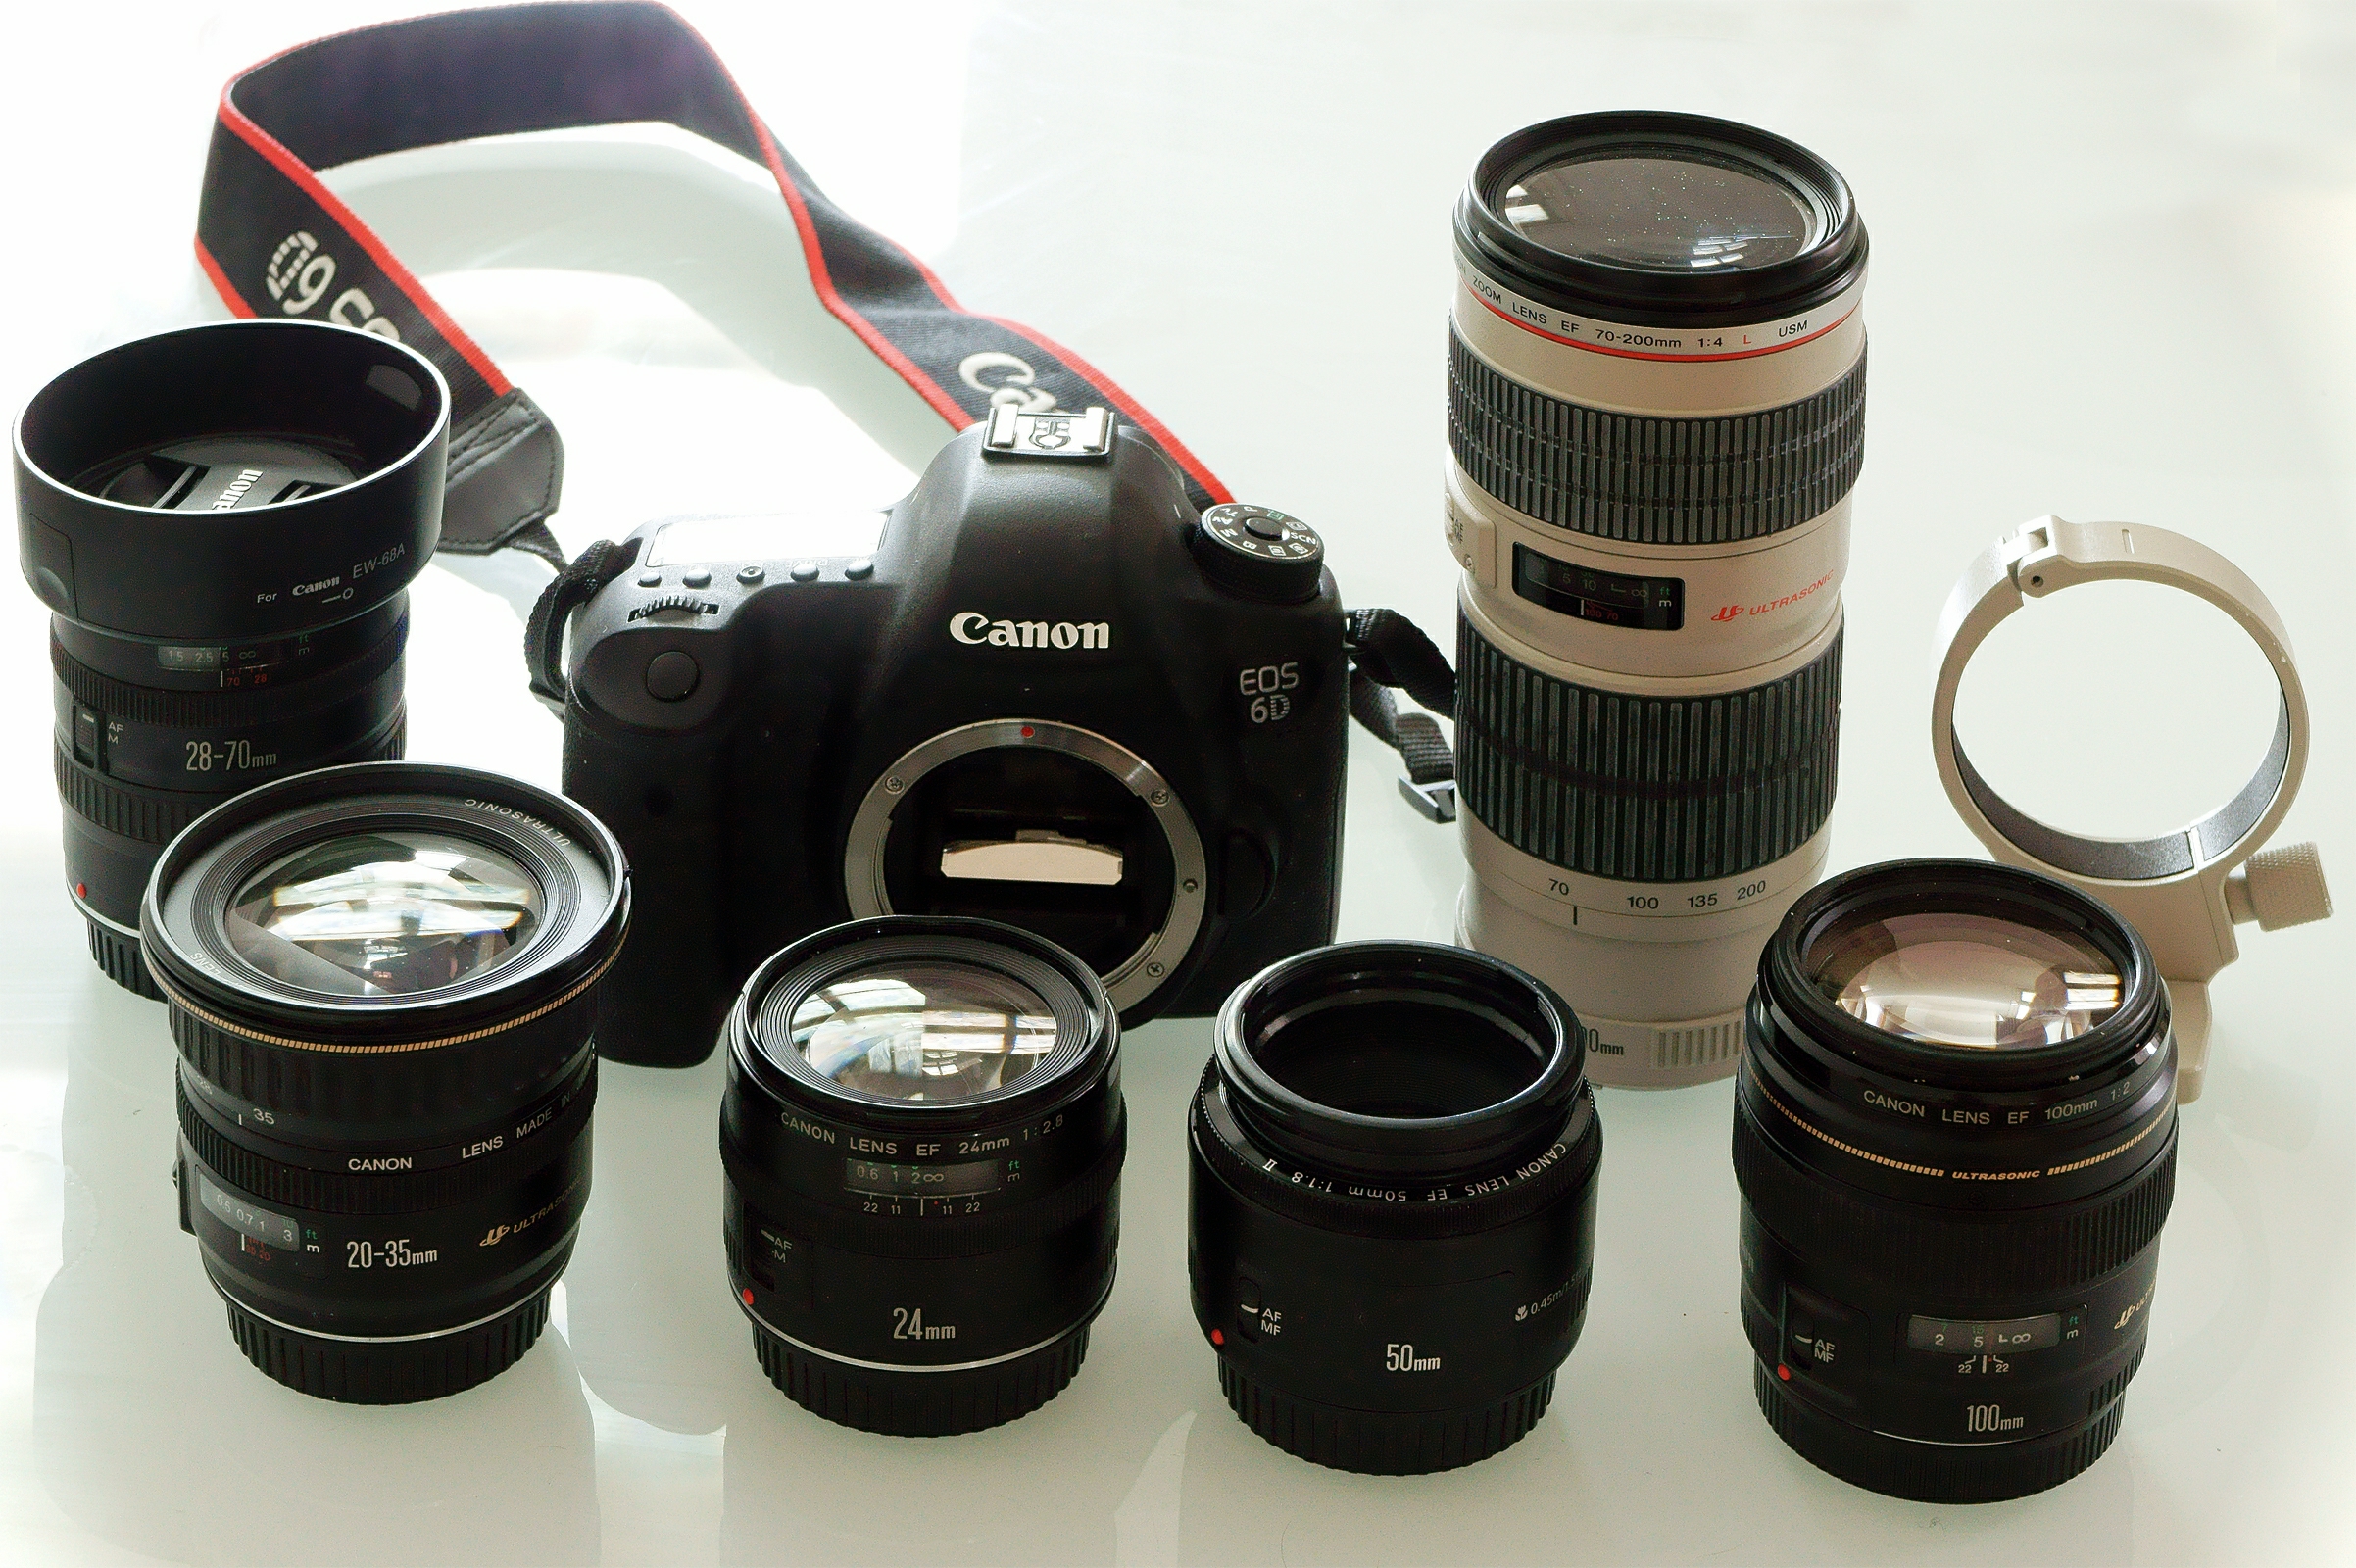 Canon EOS 6D body with Canon EF lenses